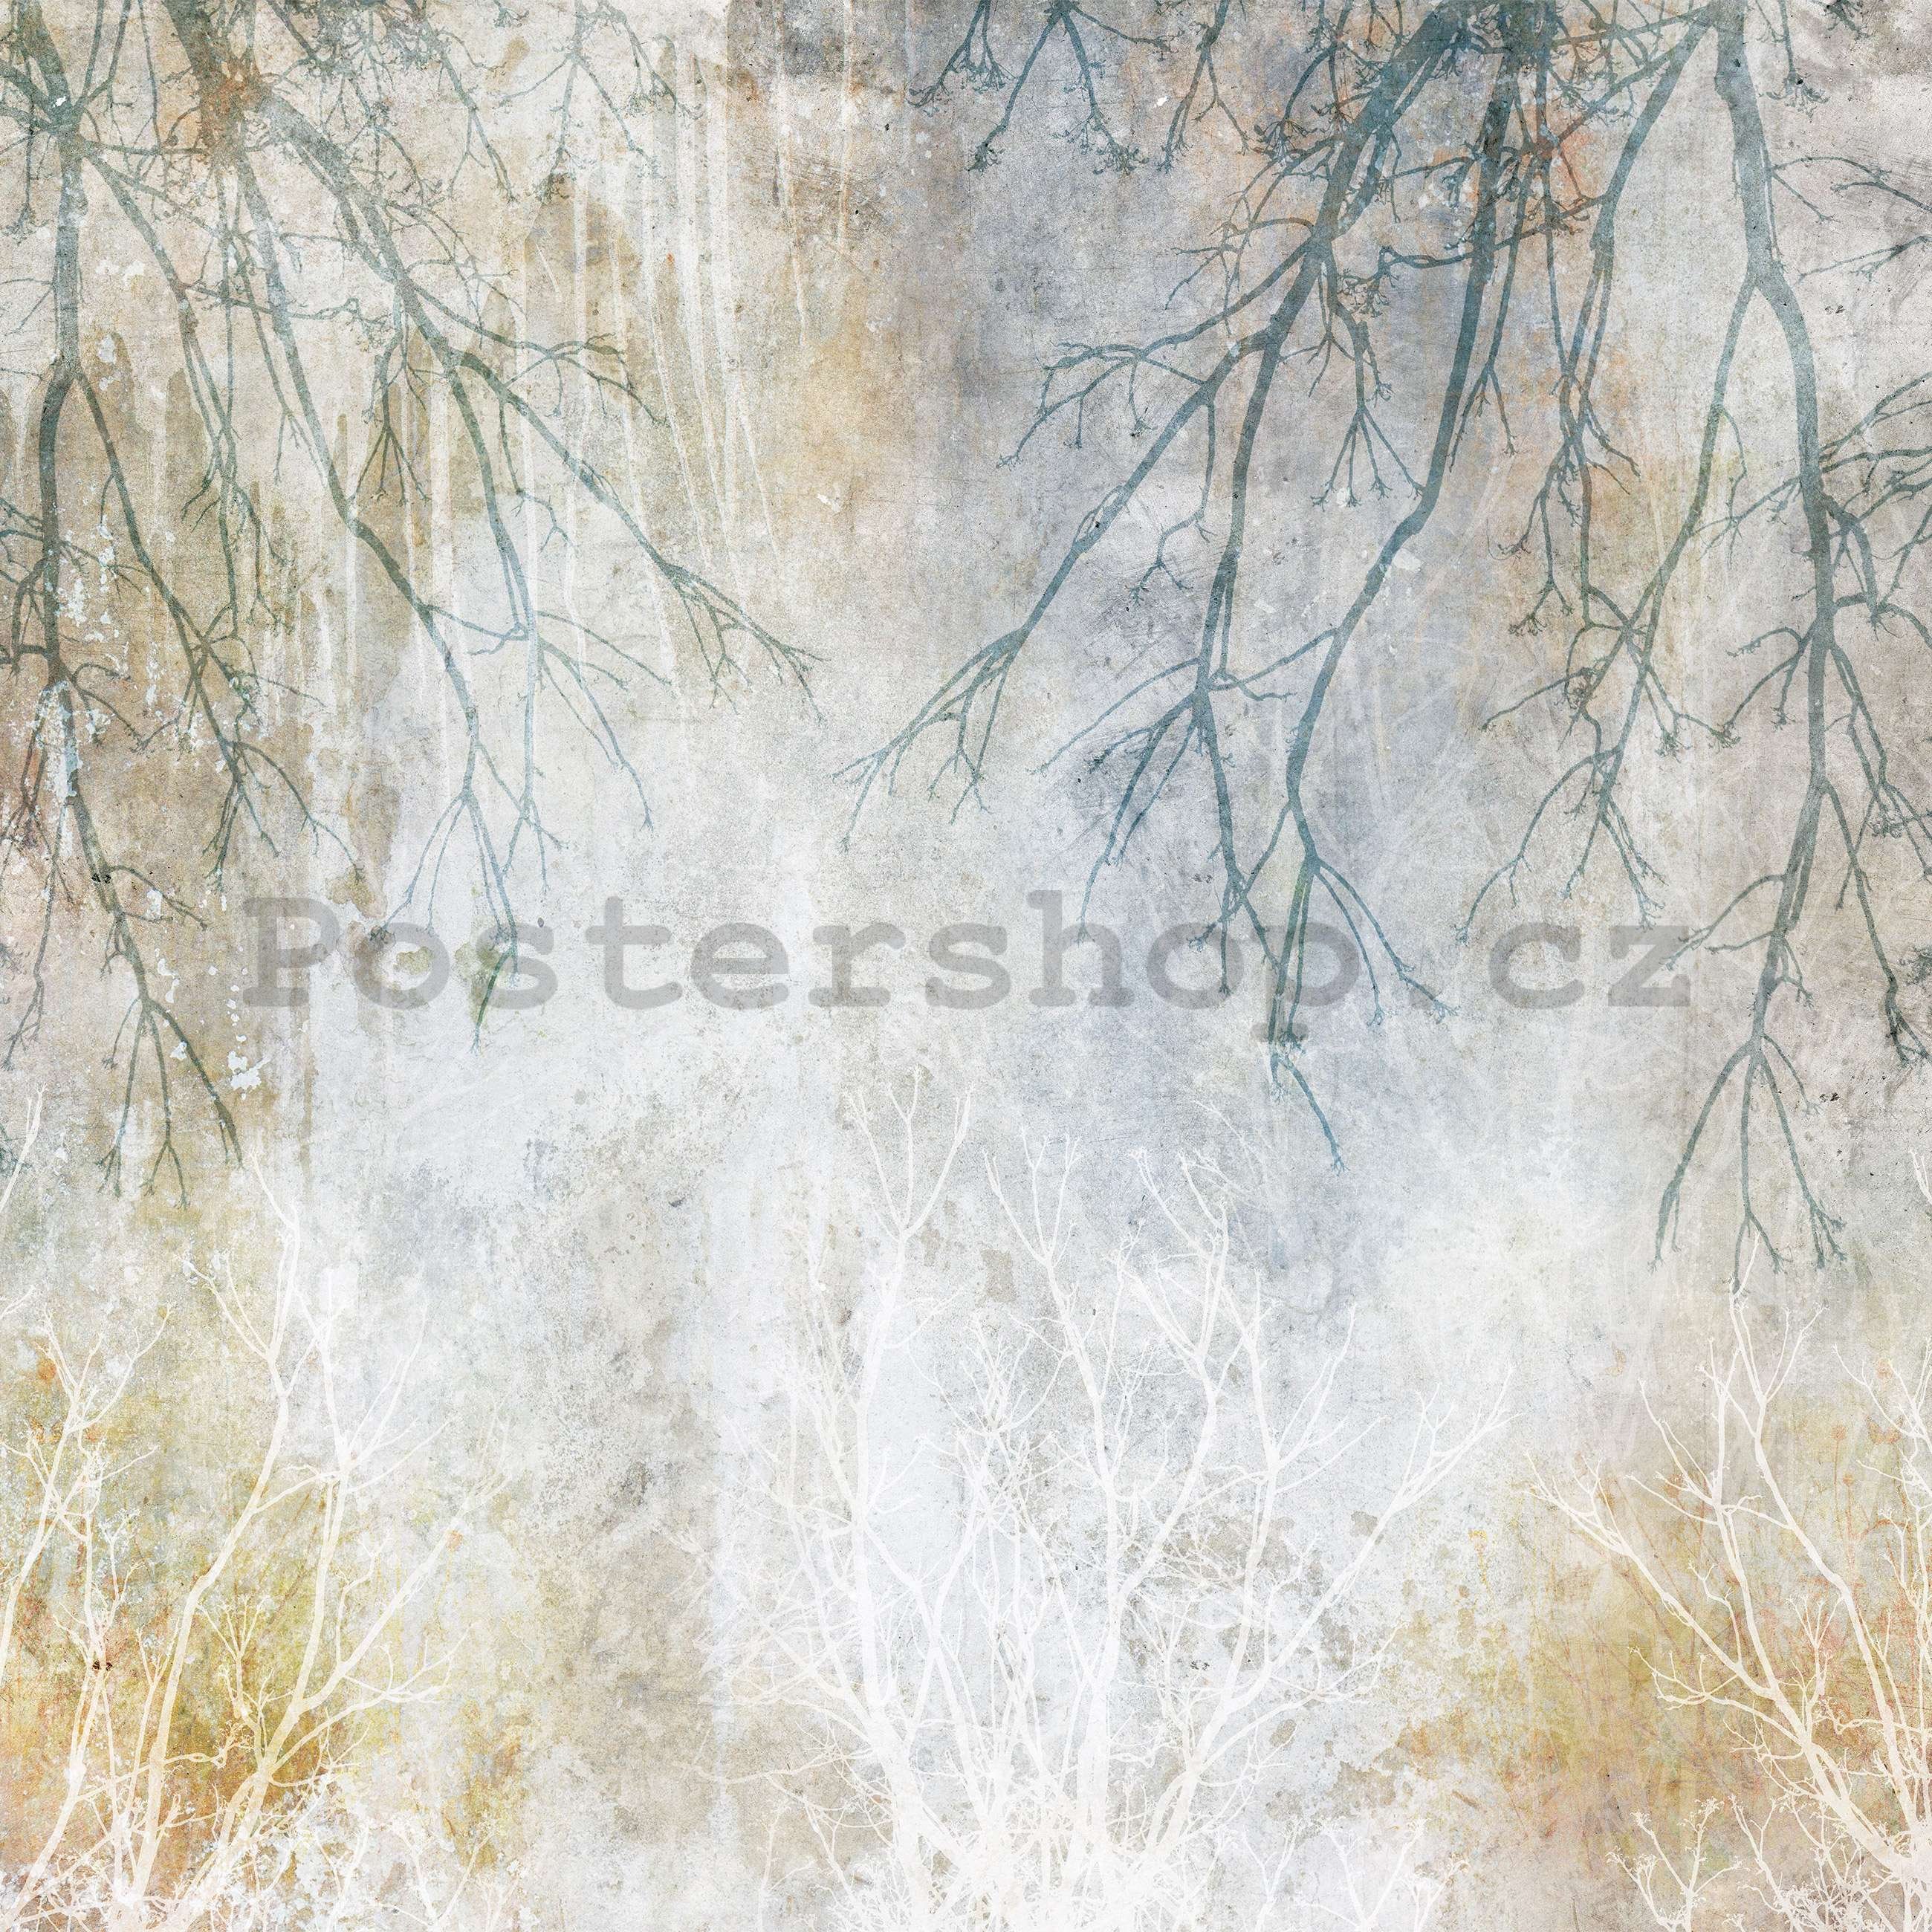 Fototapeta vliesová: Podzimní větve - 254x184 cm